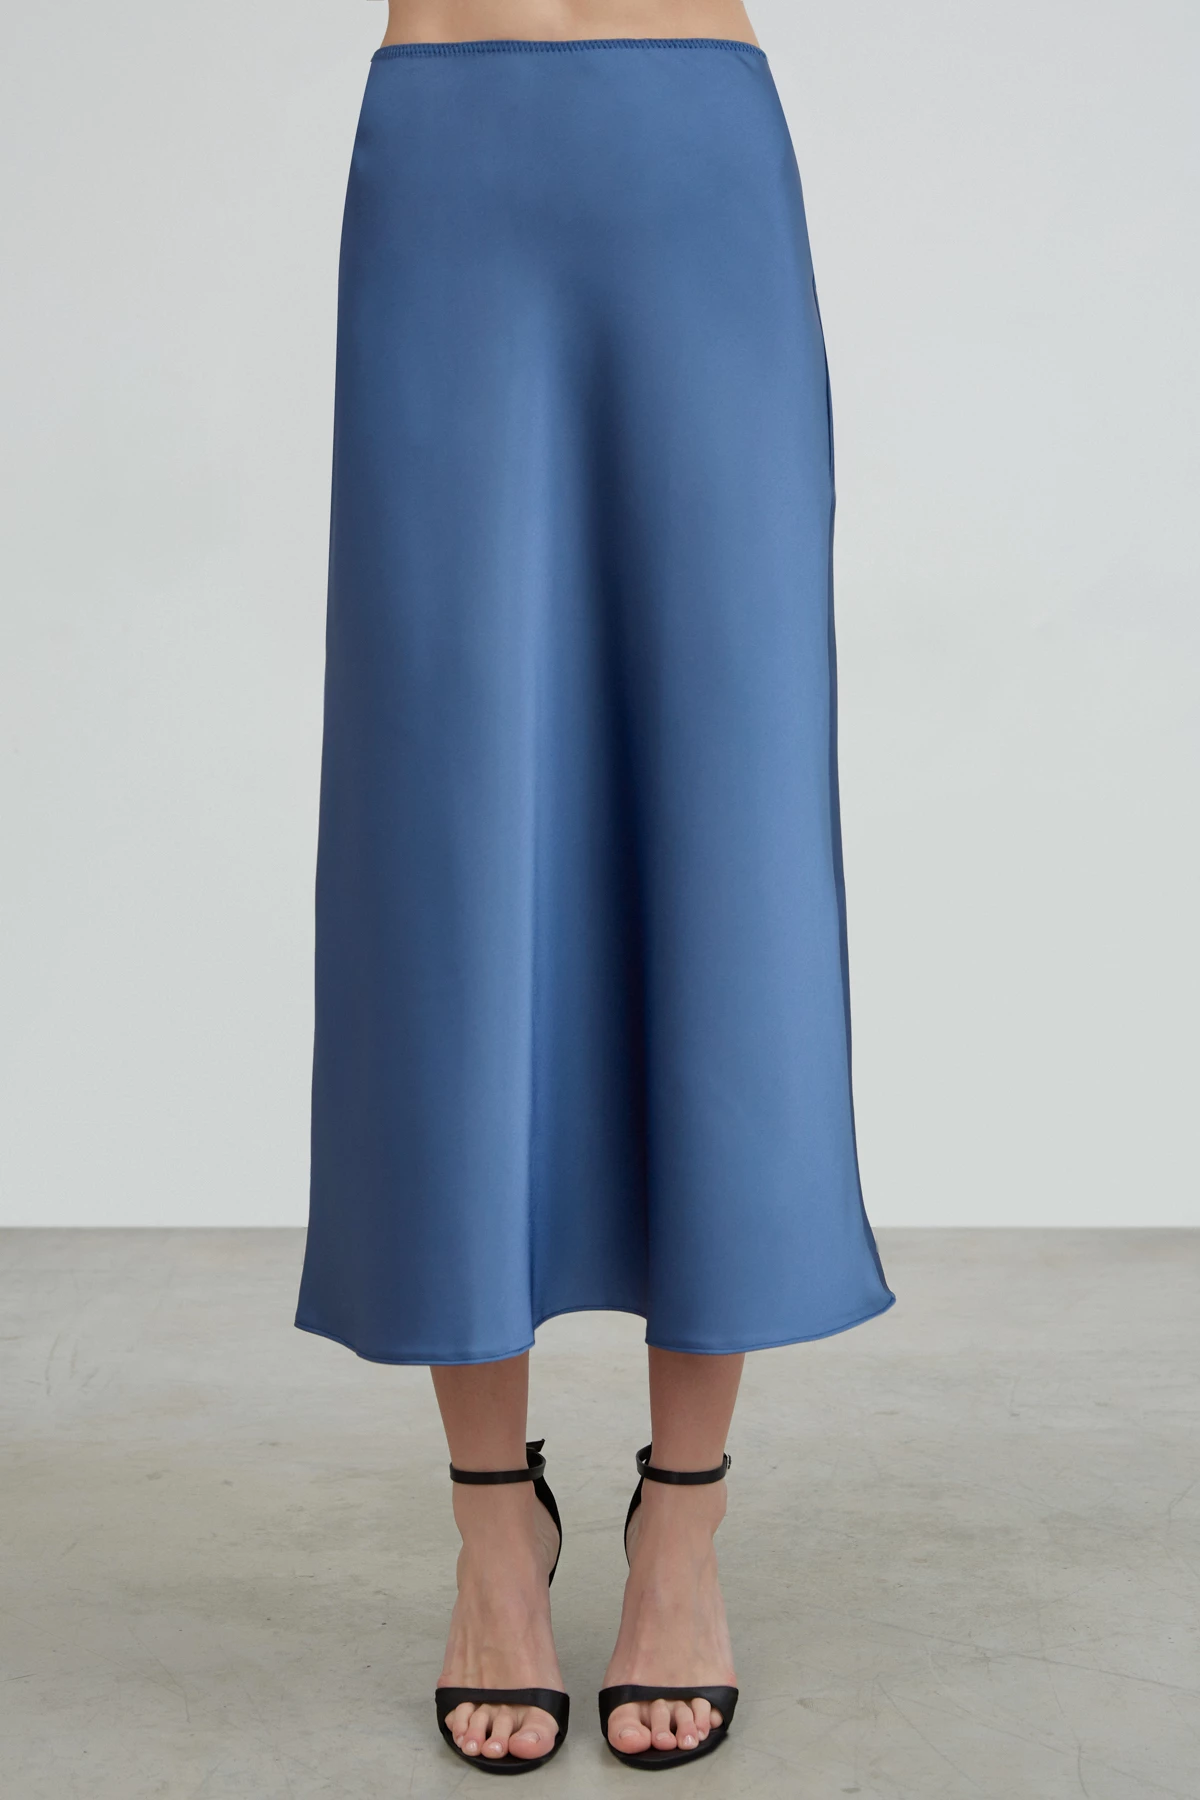 Blue satin midi skirt, photo 4